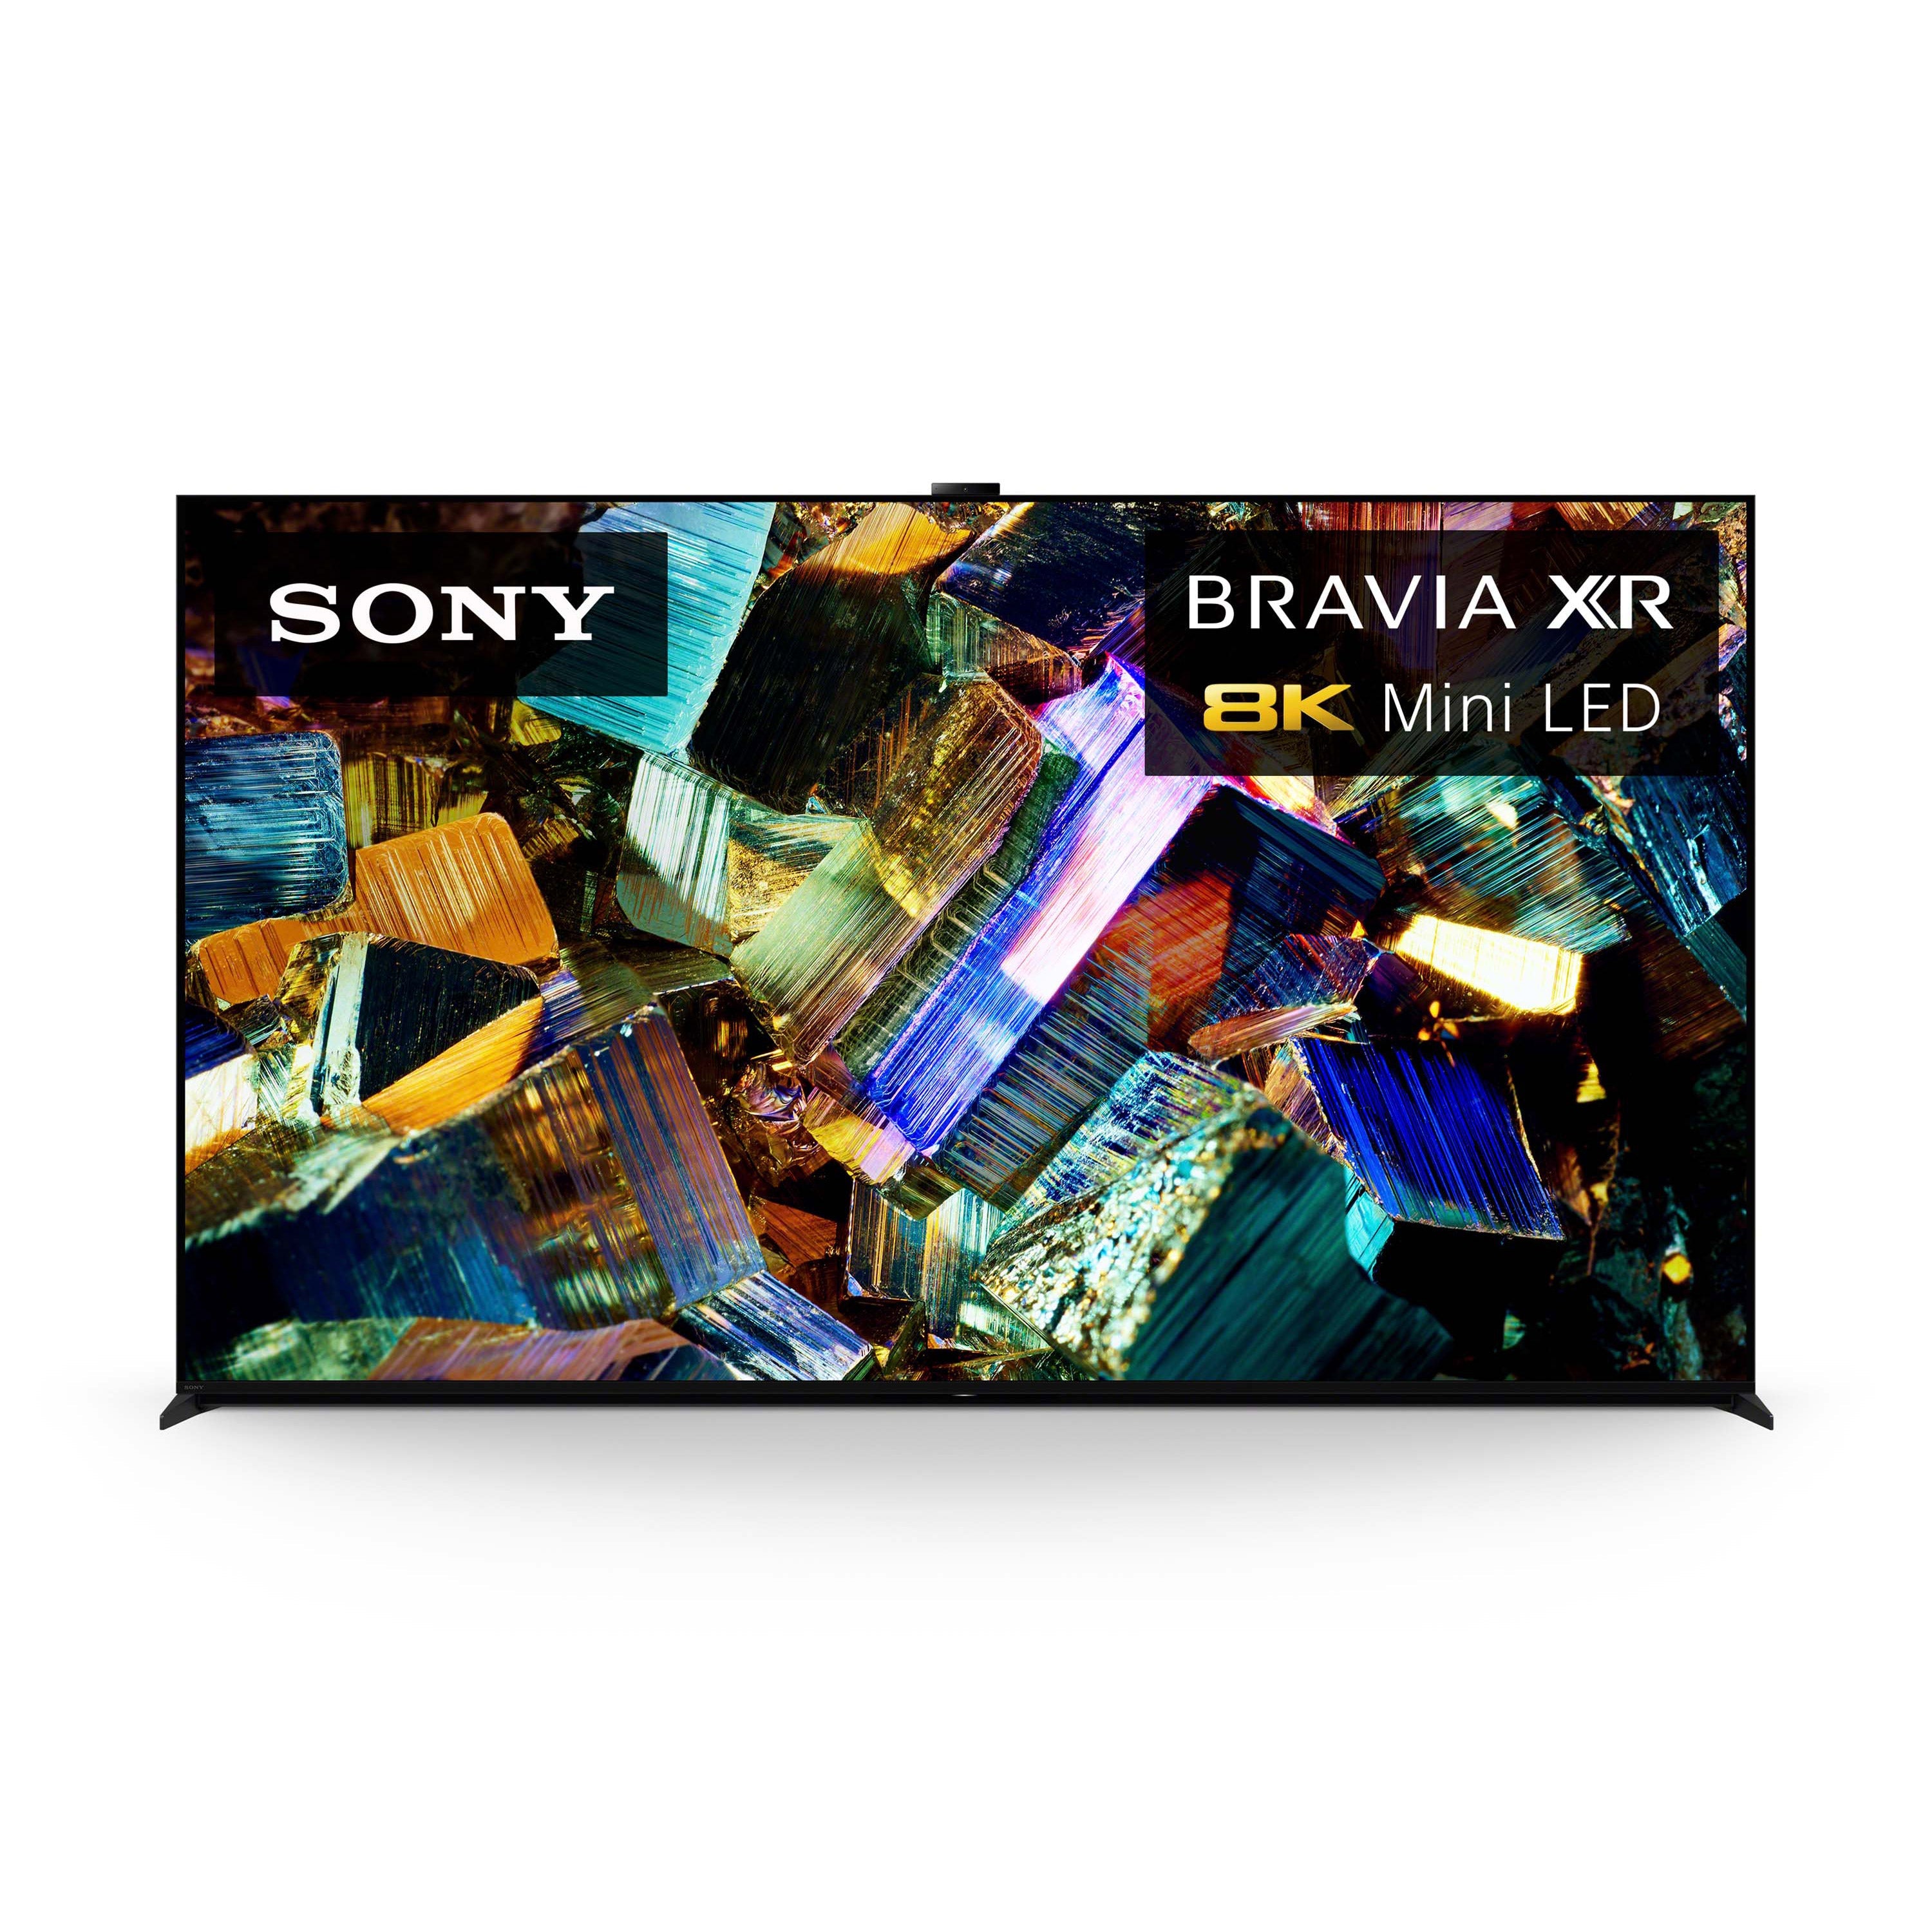 Z9K BRAVIA XR | Mini LED | 8K | High Dynamic Range (HDR) | Smart TV (Google TV)